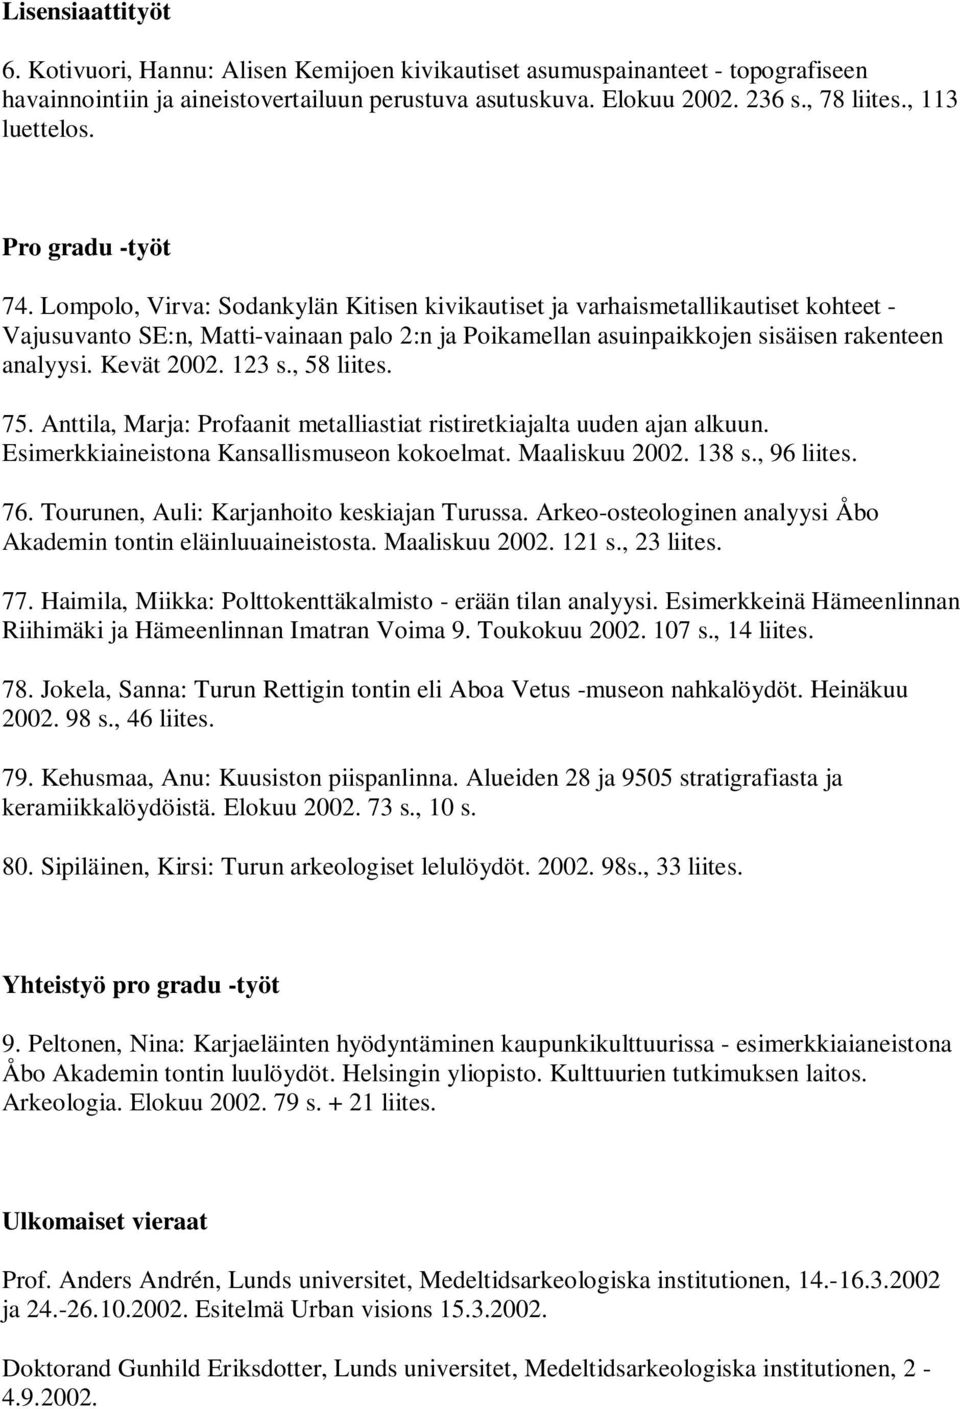 Lompolo, Virva: Sodankylän Kitisen kivikautiset ja varhaismetallikautiset kohteet - Vajusuvanto SE:n, Matti-vainaan palo 2:n ja Poikamellan asuinpaikkojen sisäisen rakenteen analyysi. Kevät 2002.